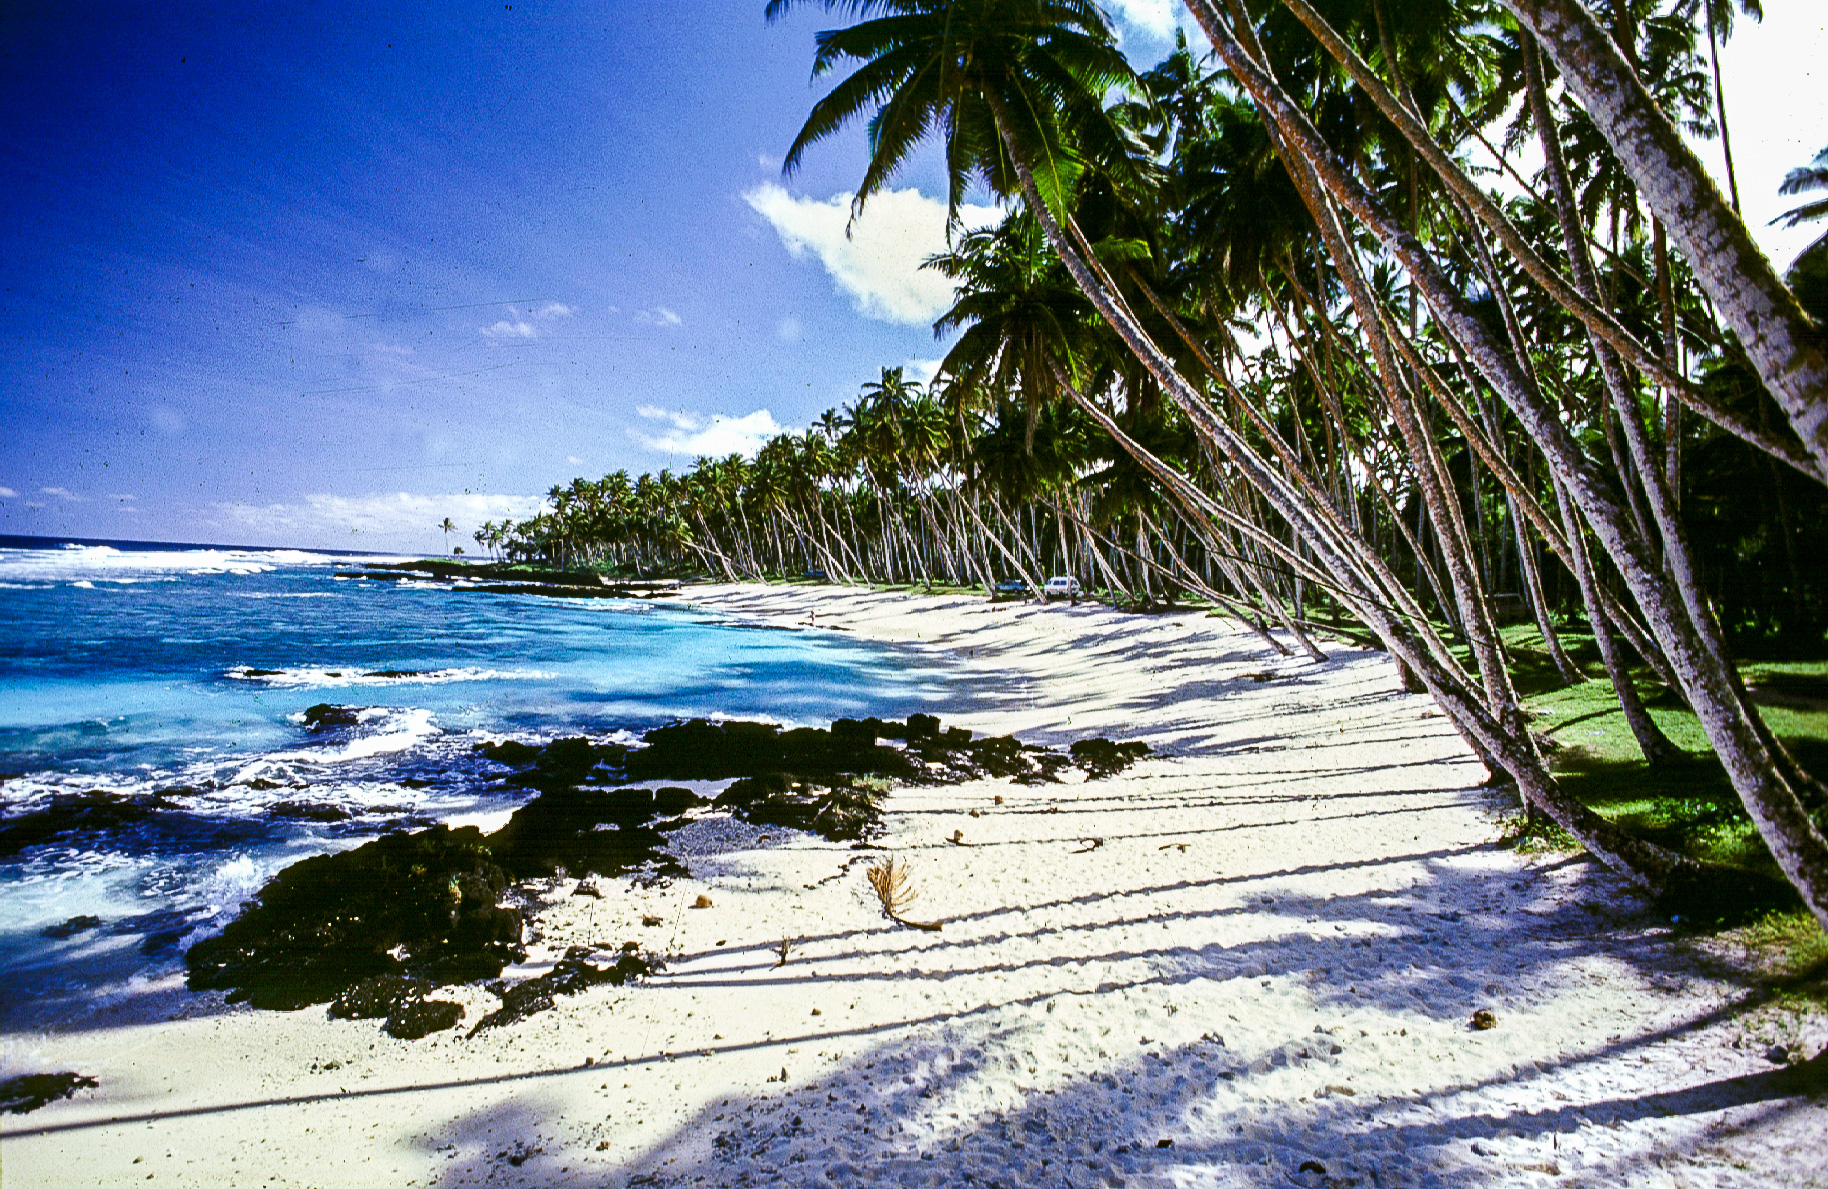 Return to paradise beach - lieu où fut tourné le célèbre film du même nom.